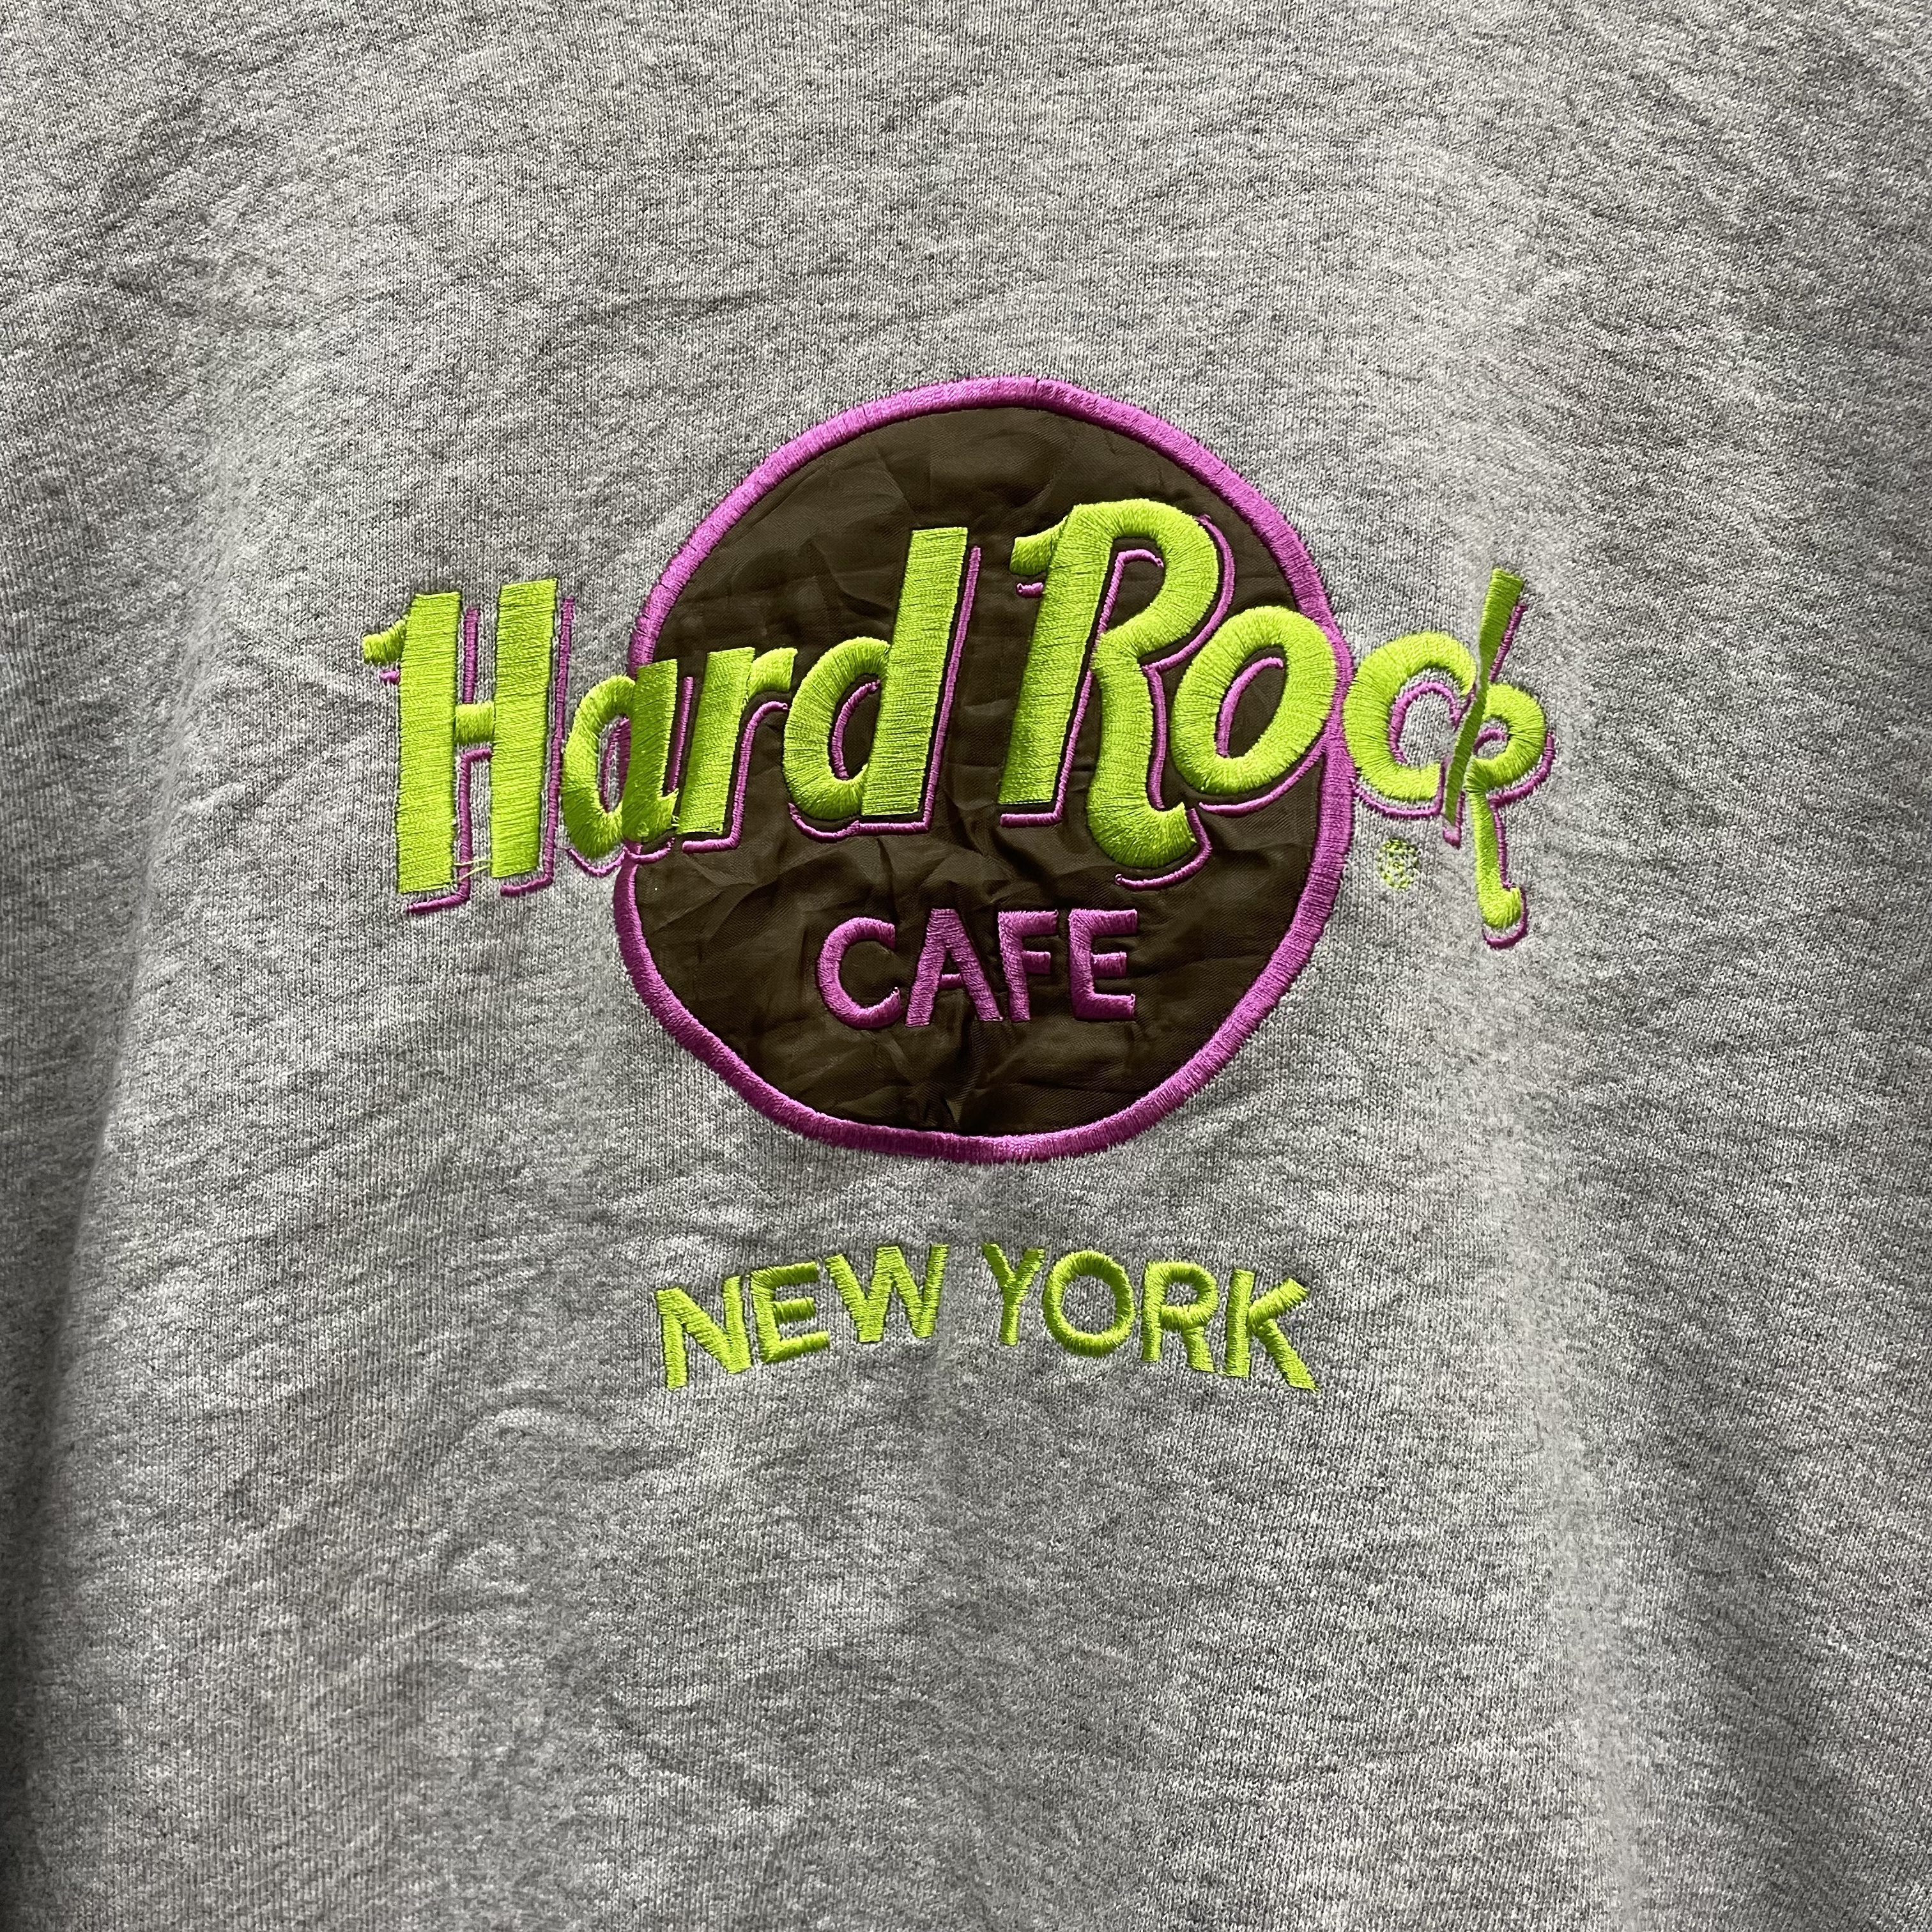 ハードロックカフェ ニューヨーク スウェット トレーナー 刺繍ロゴ